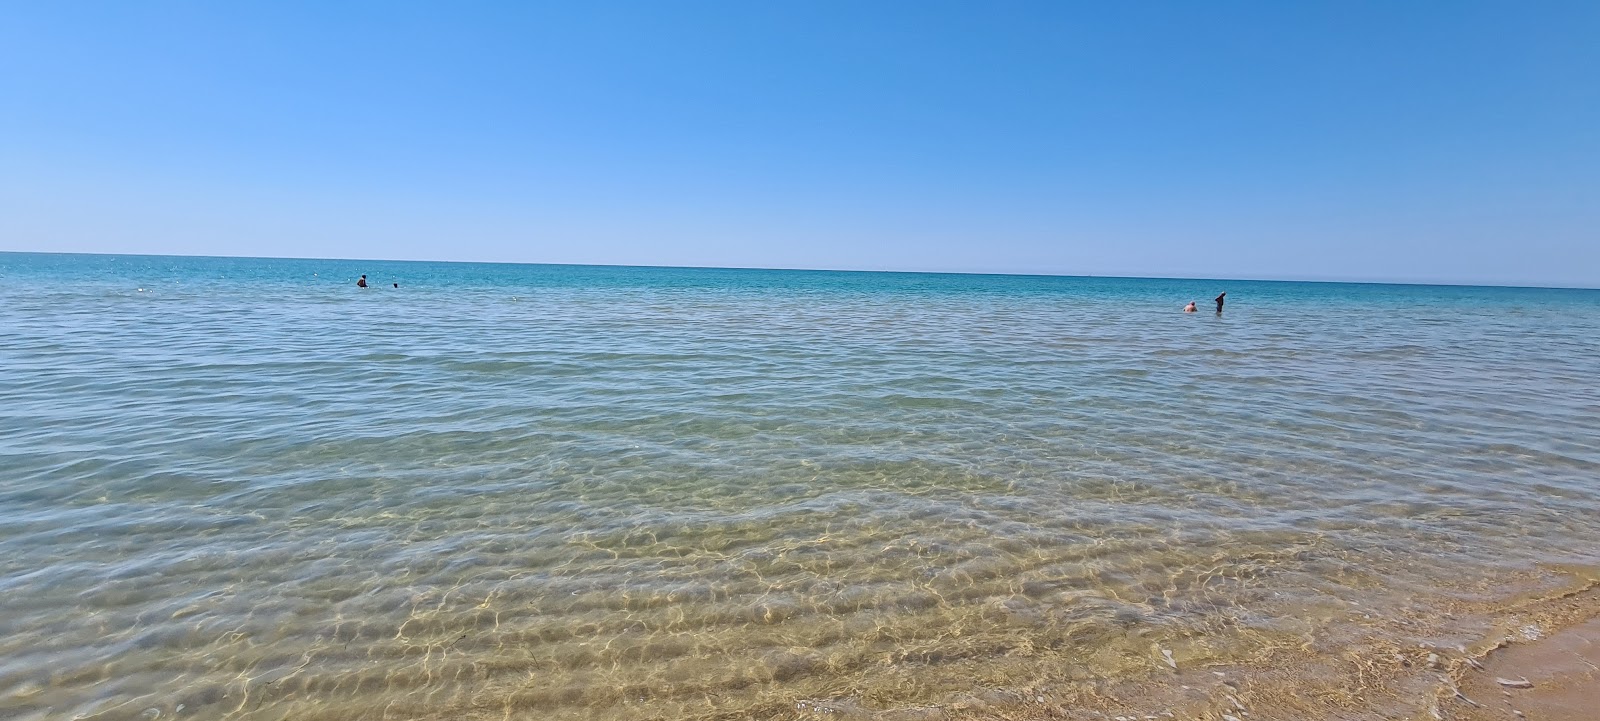 Foto von Spiaggia Roccazzelle mit langer gerader strand